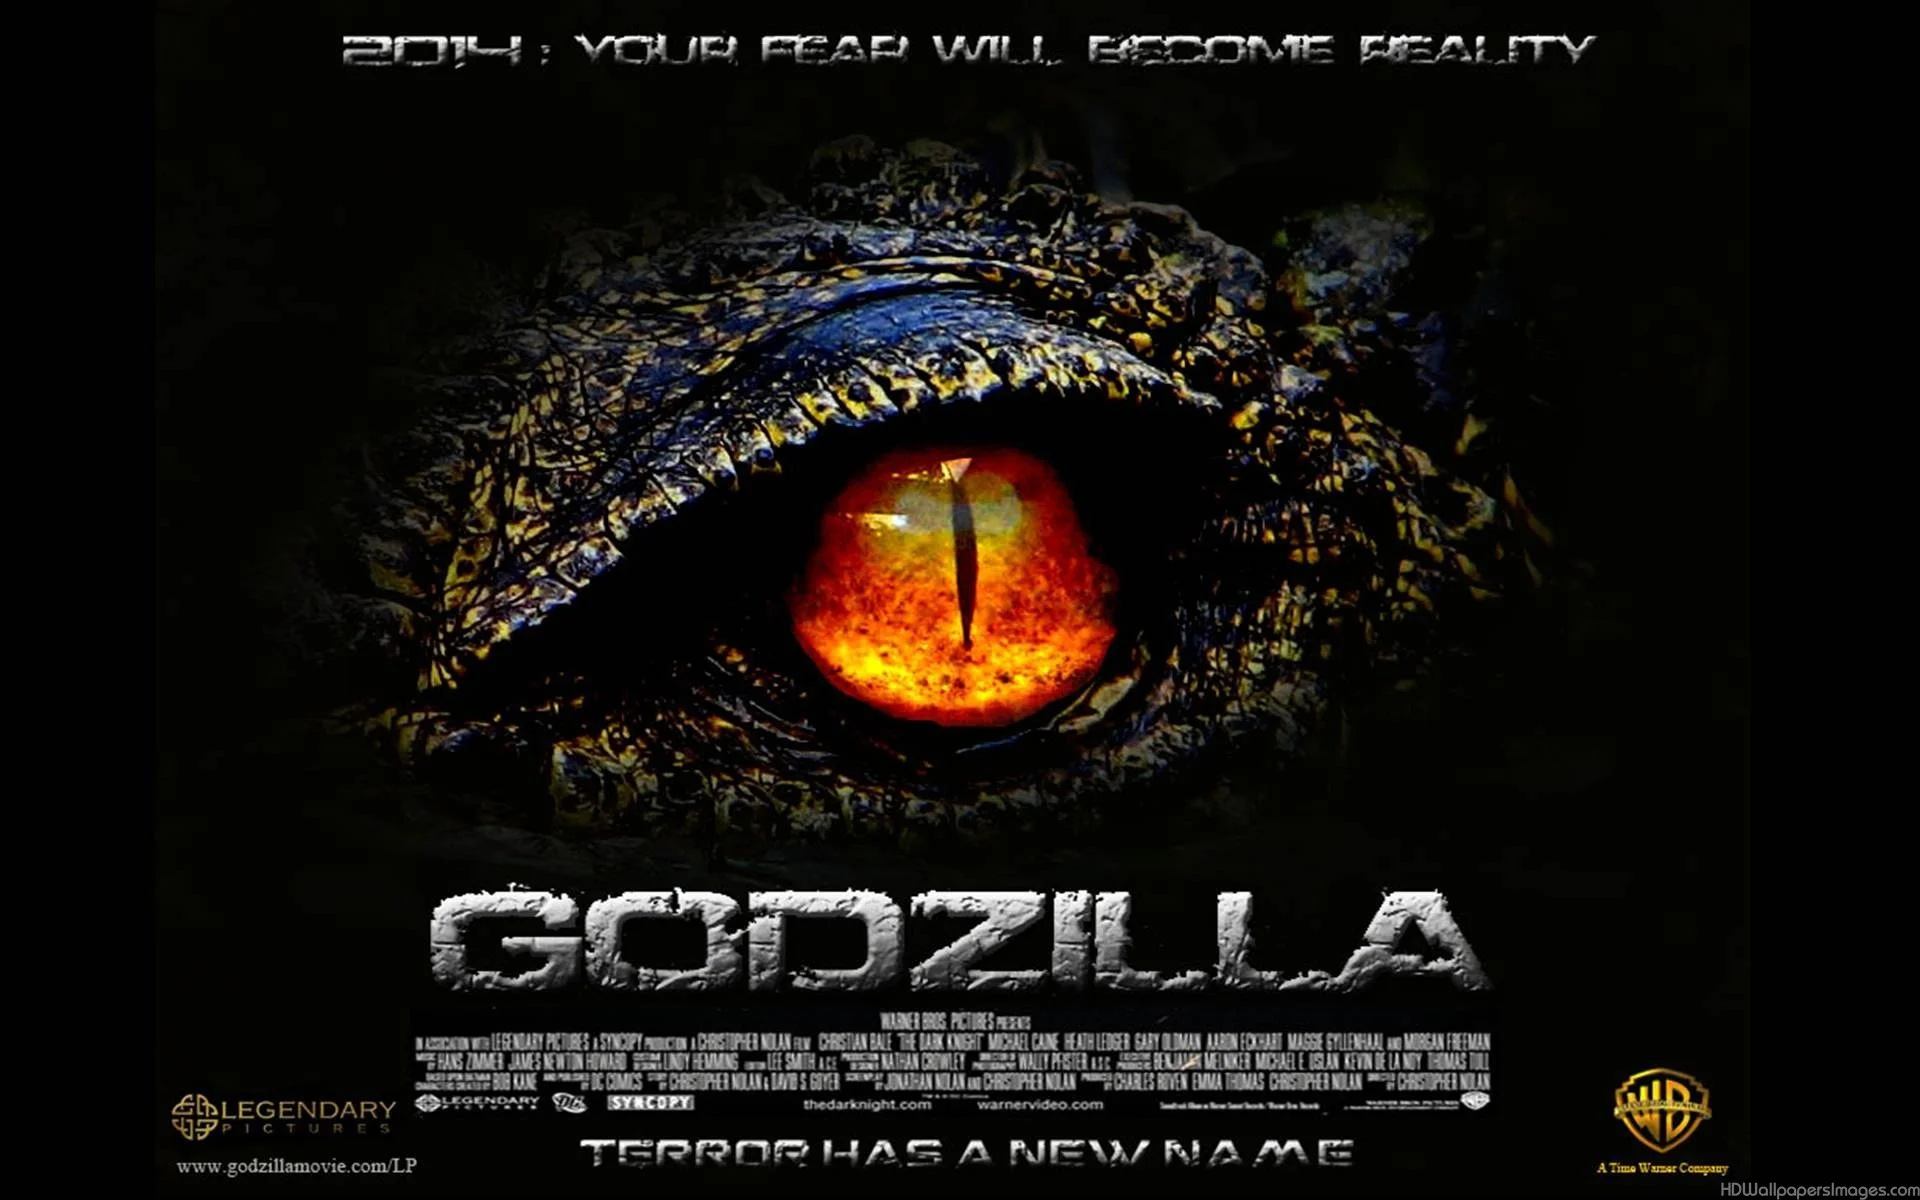 Godzilla 2014 Movie wallpapers (79 Wallpapers) – Wallpapers For Desktop